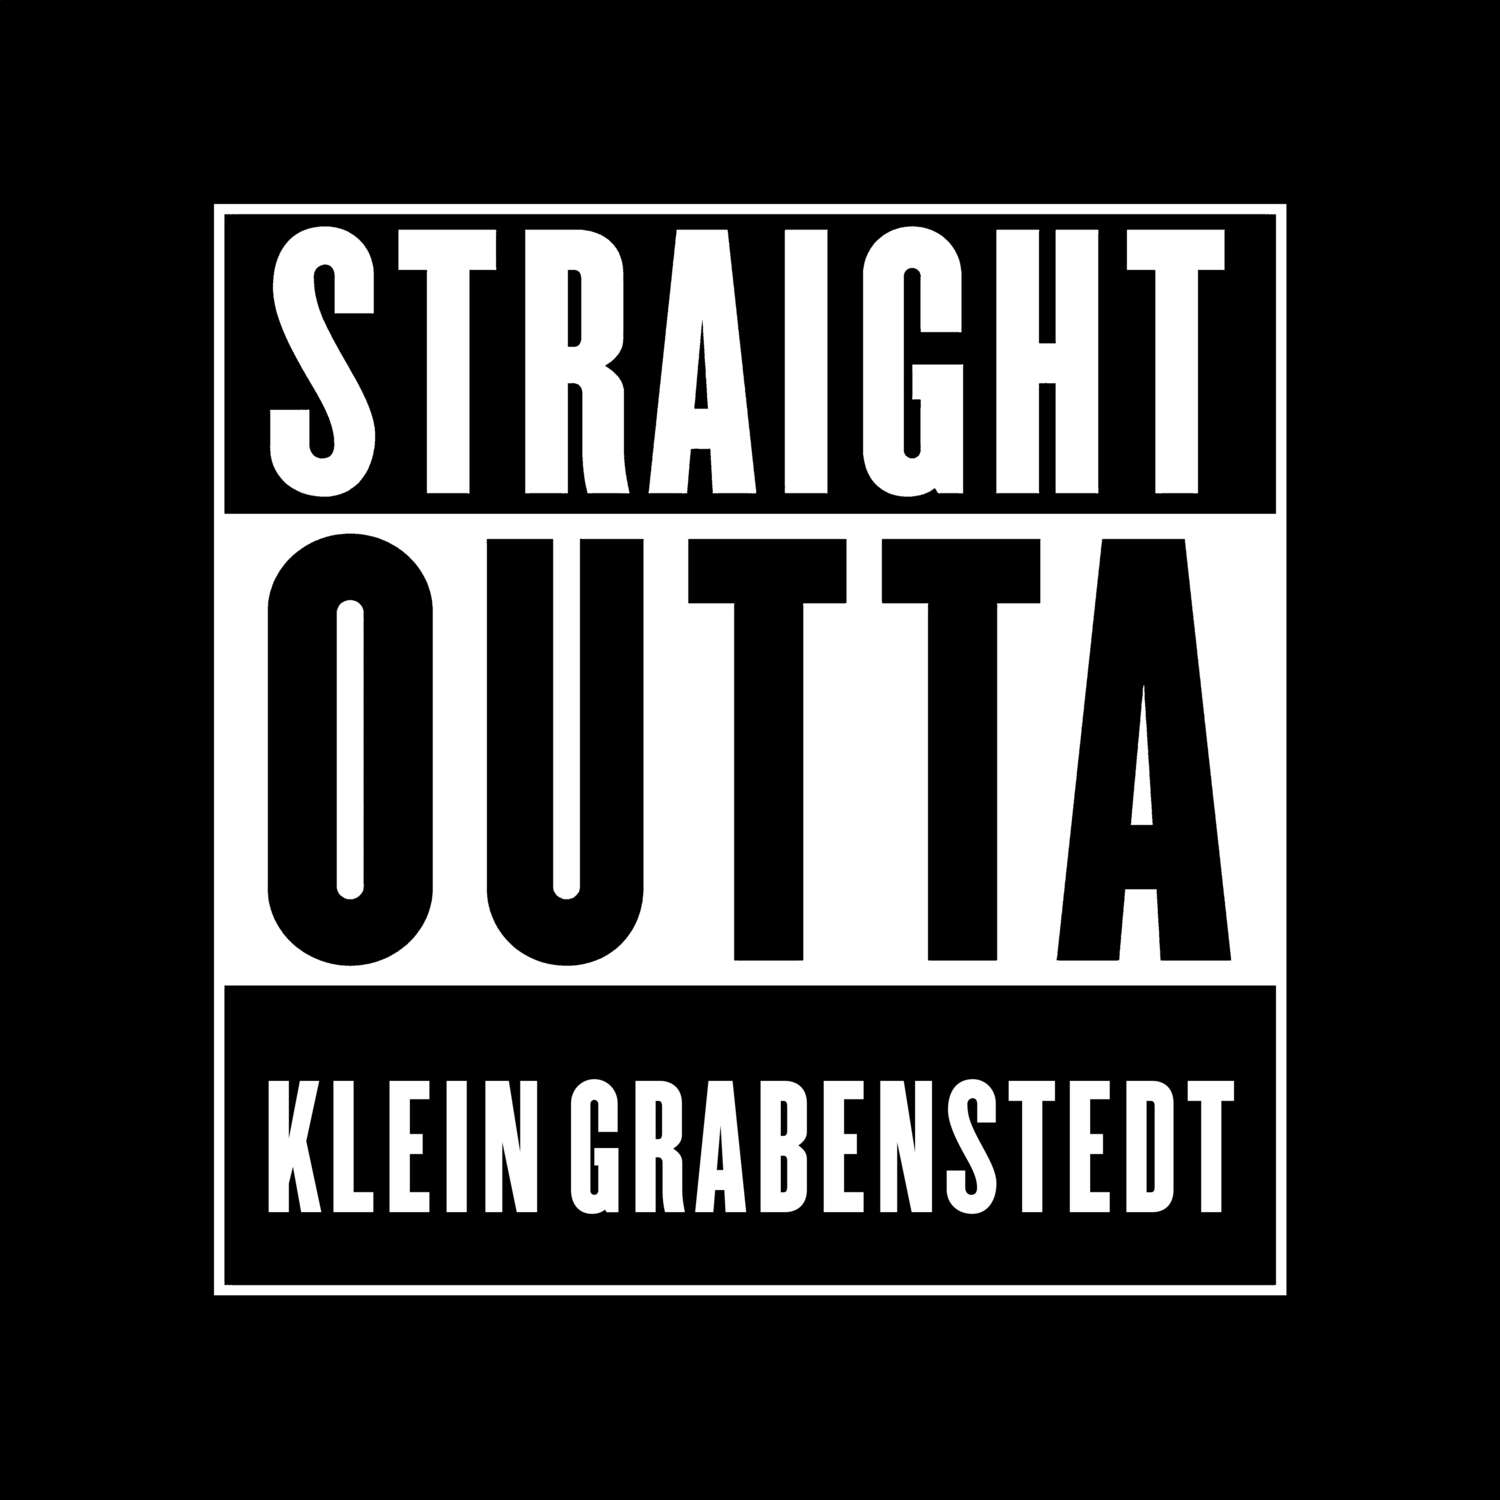 Klein Grabenstedt T-Shirt »Straight Outta«